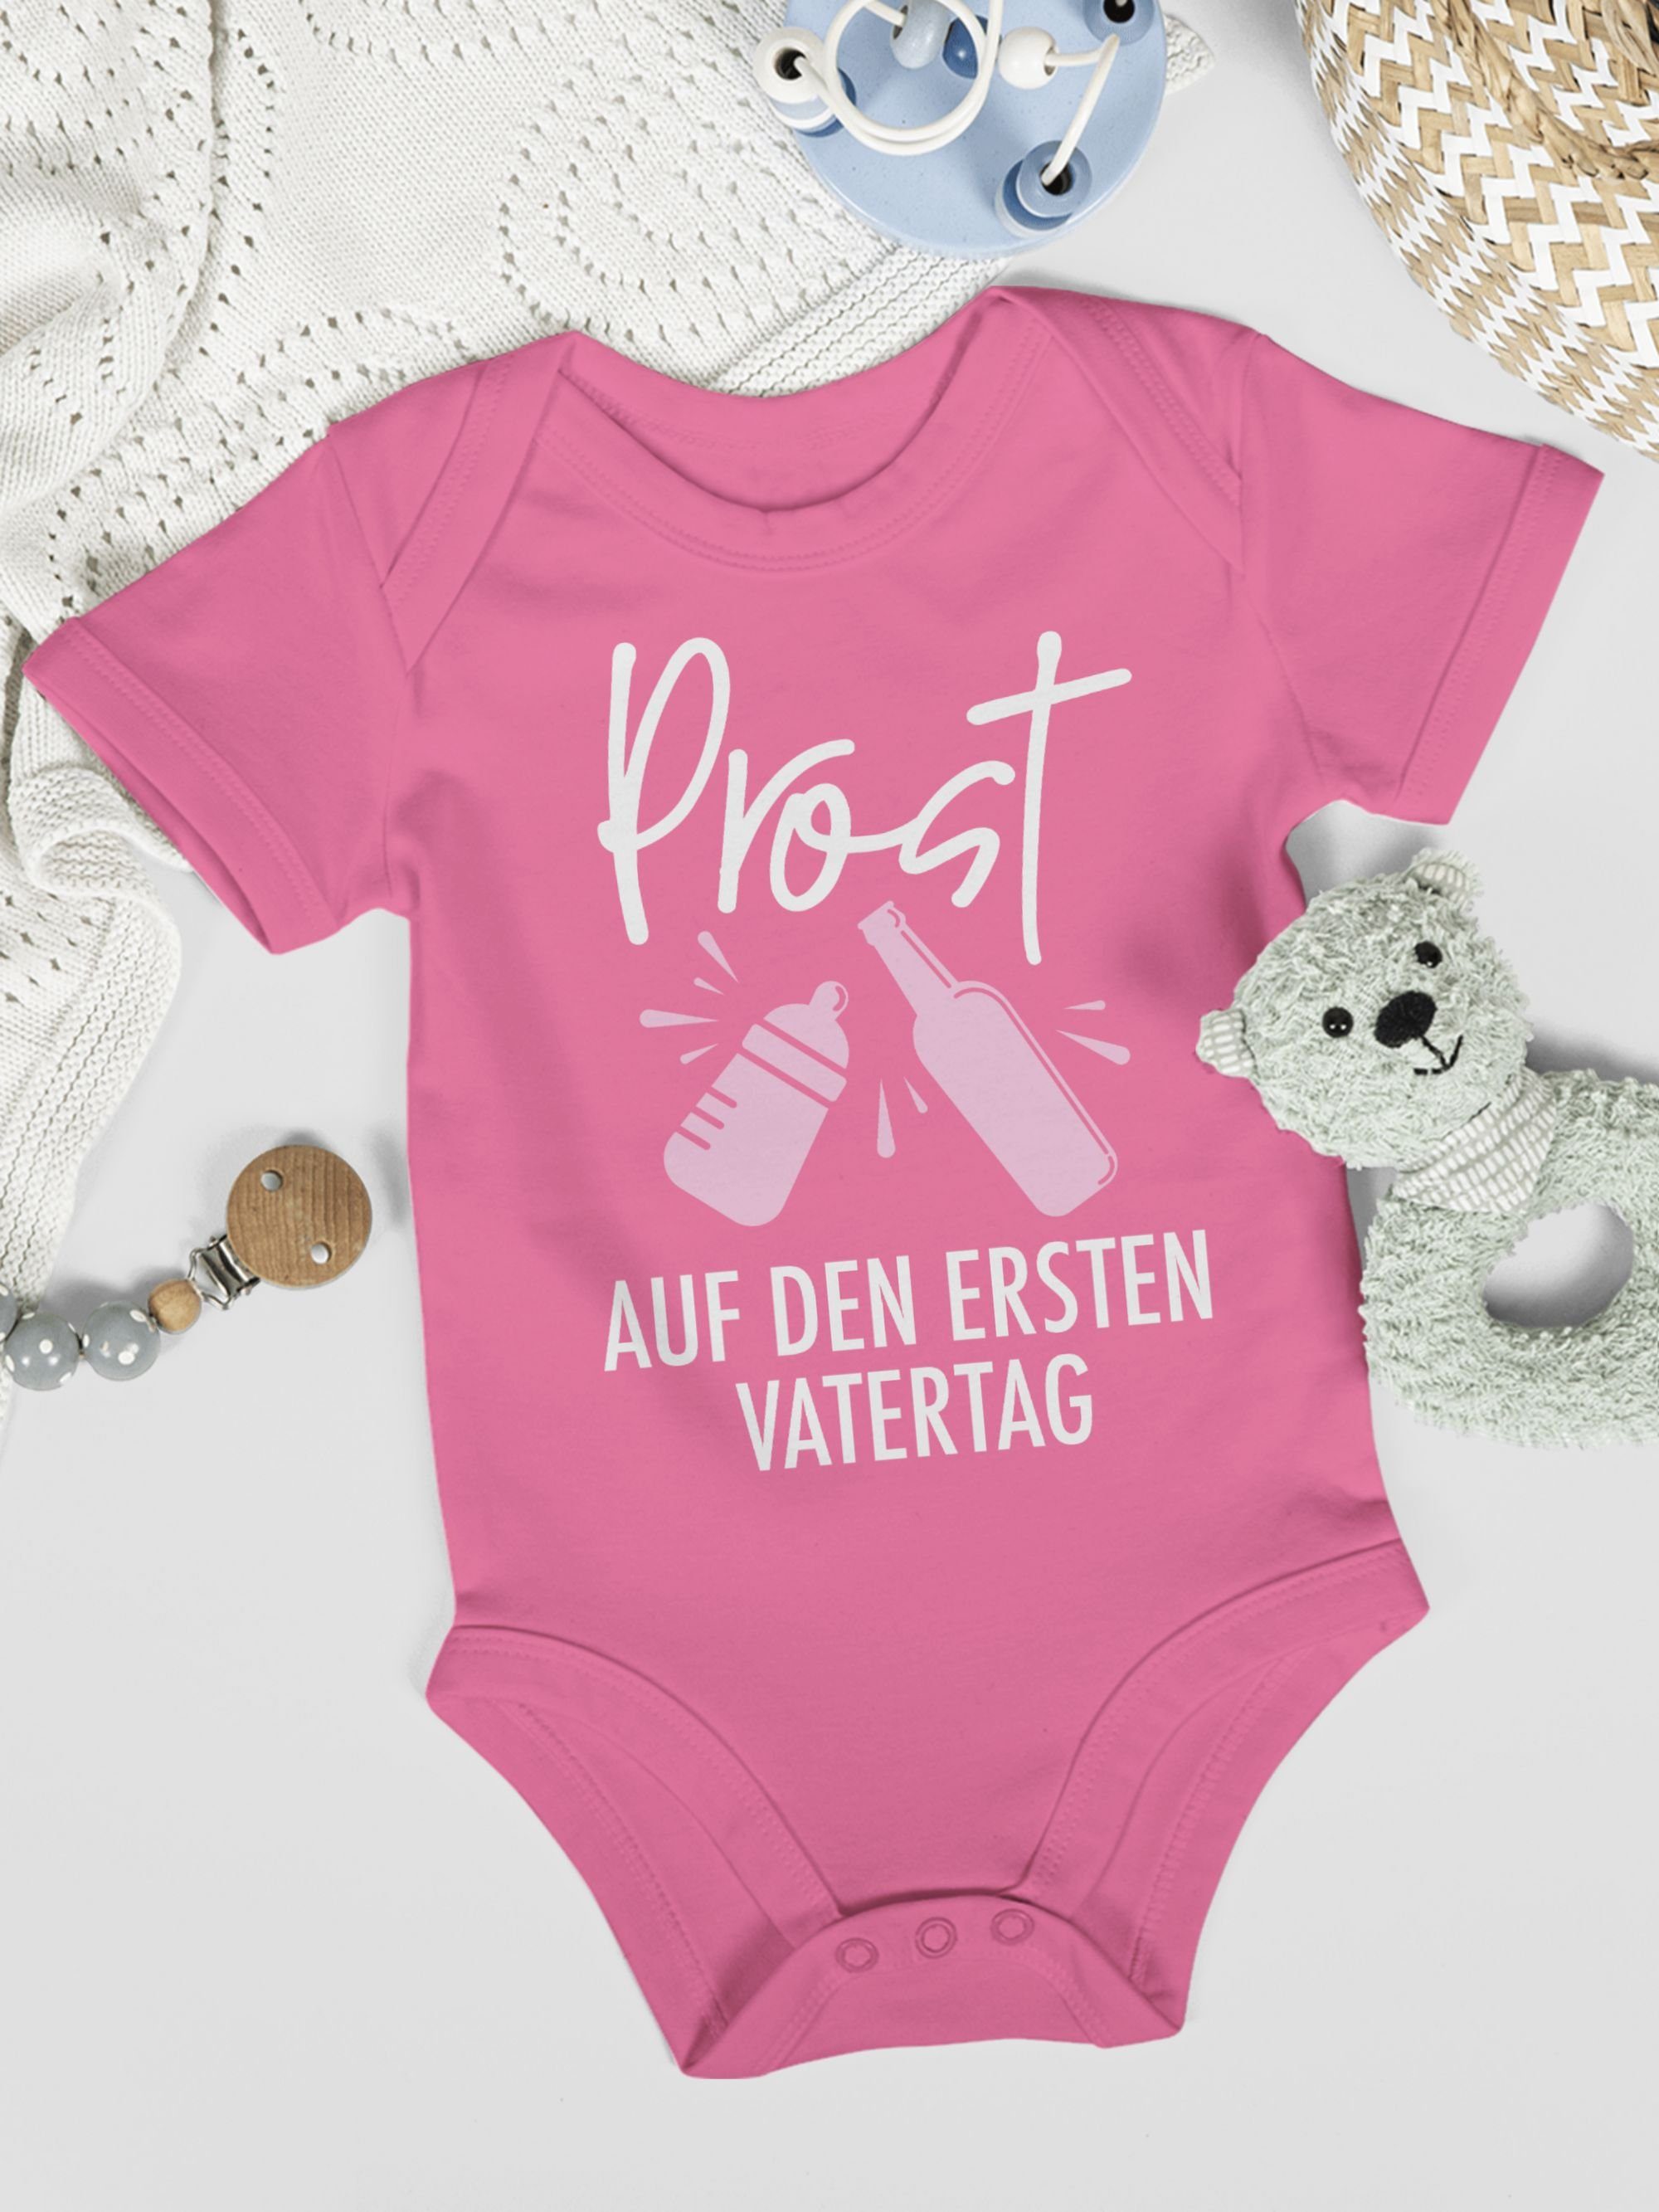 Vatertag 2 den weiß/rosa Vatertag Pink auf Shirtbody Geschenk Baby - Prost Shirtracer ersten